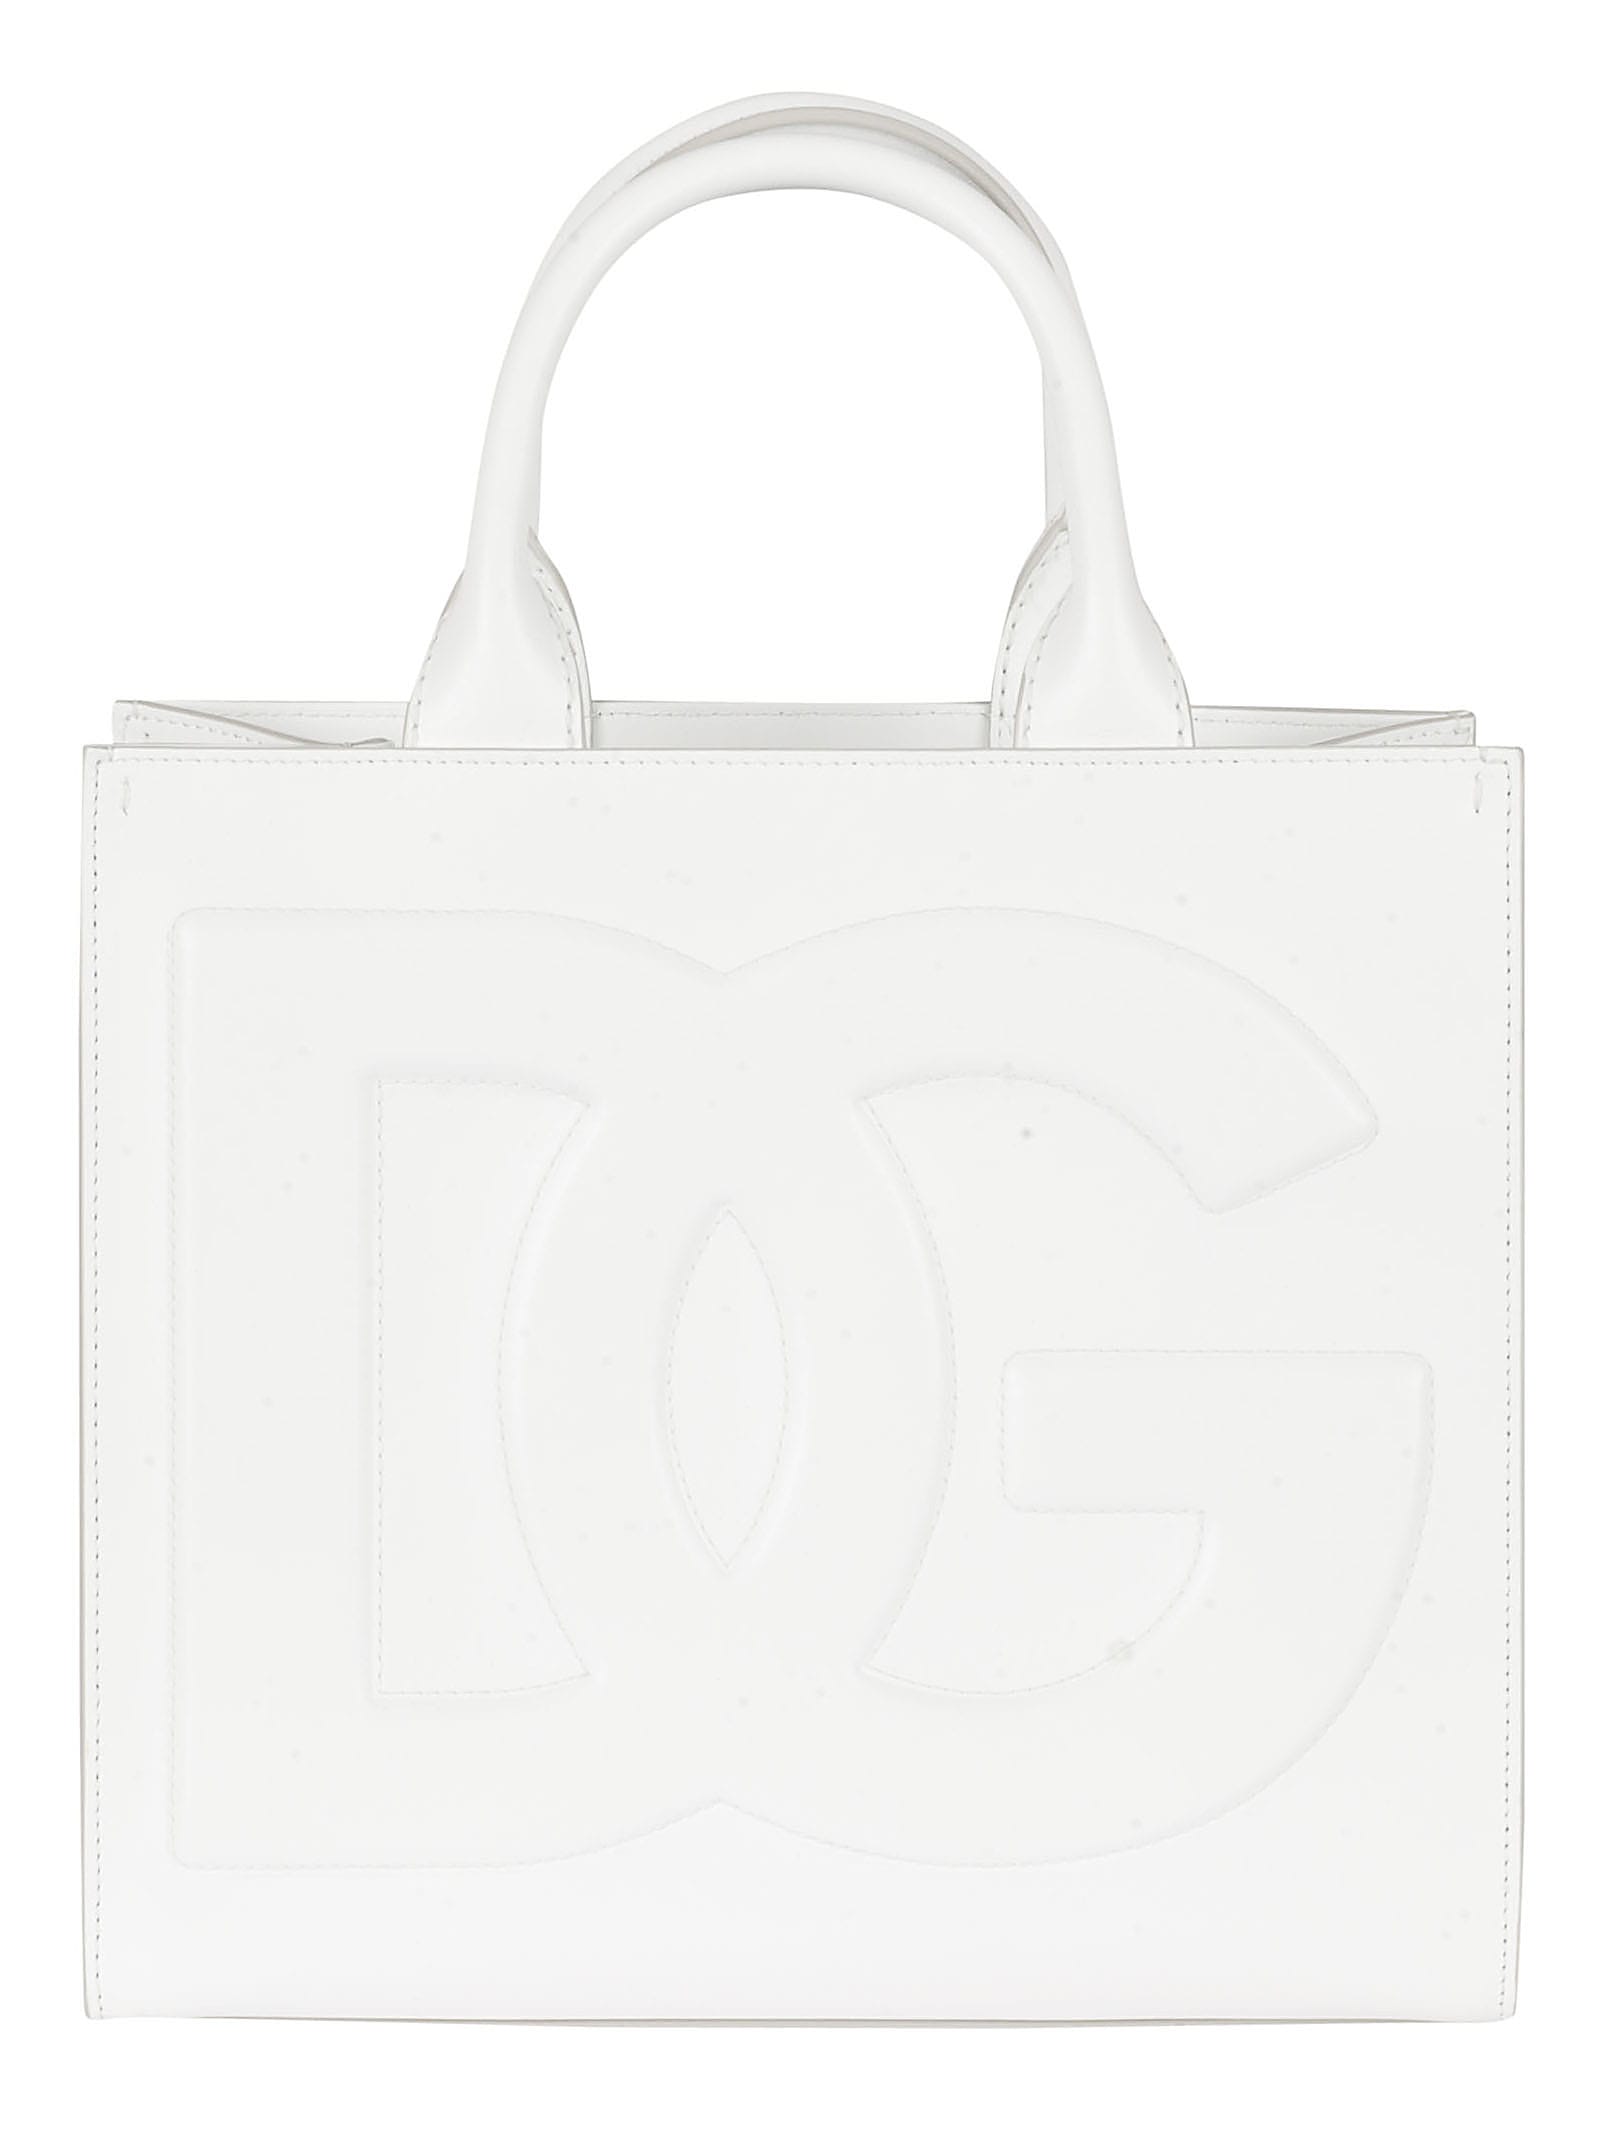 Dolce & Gabbana Dg Embossed Shopper Bag